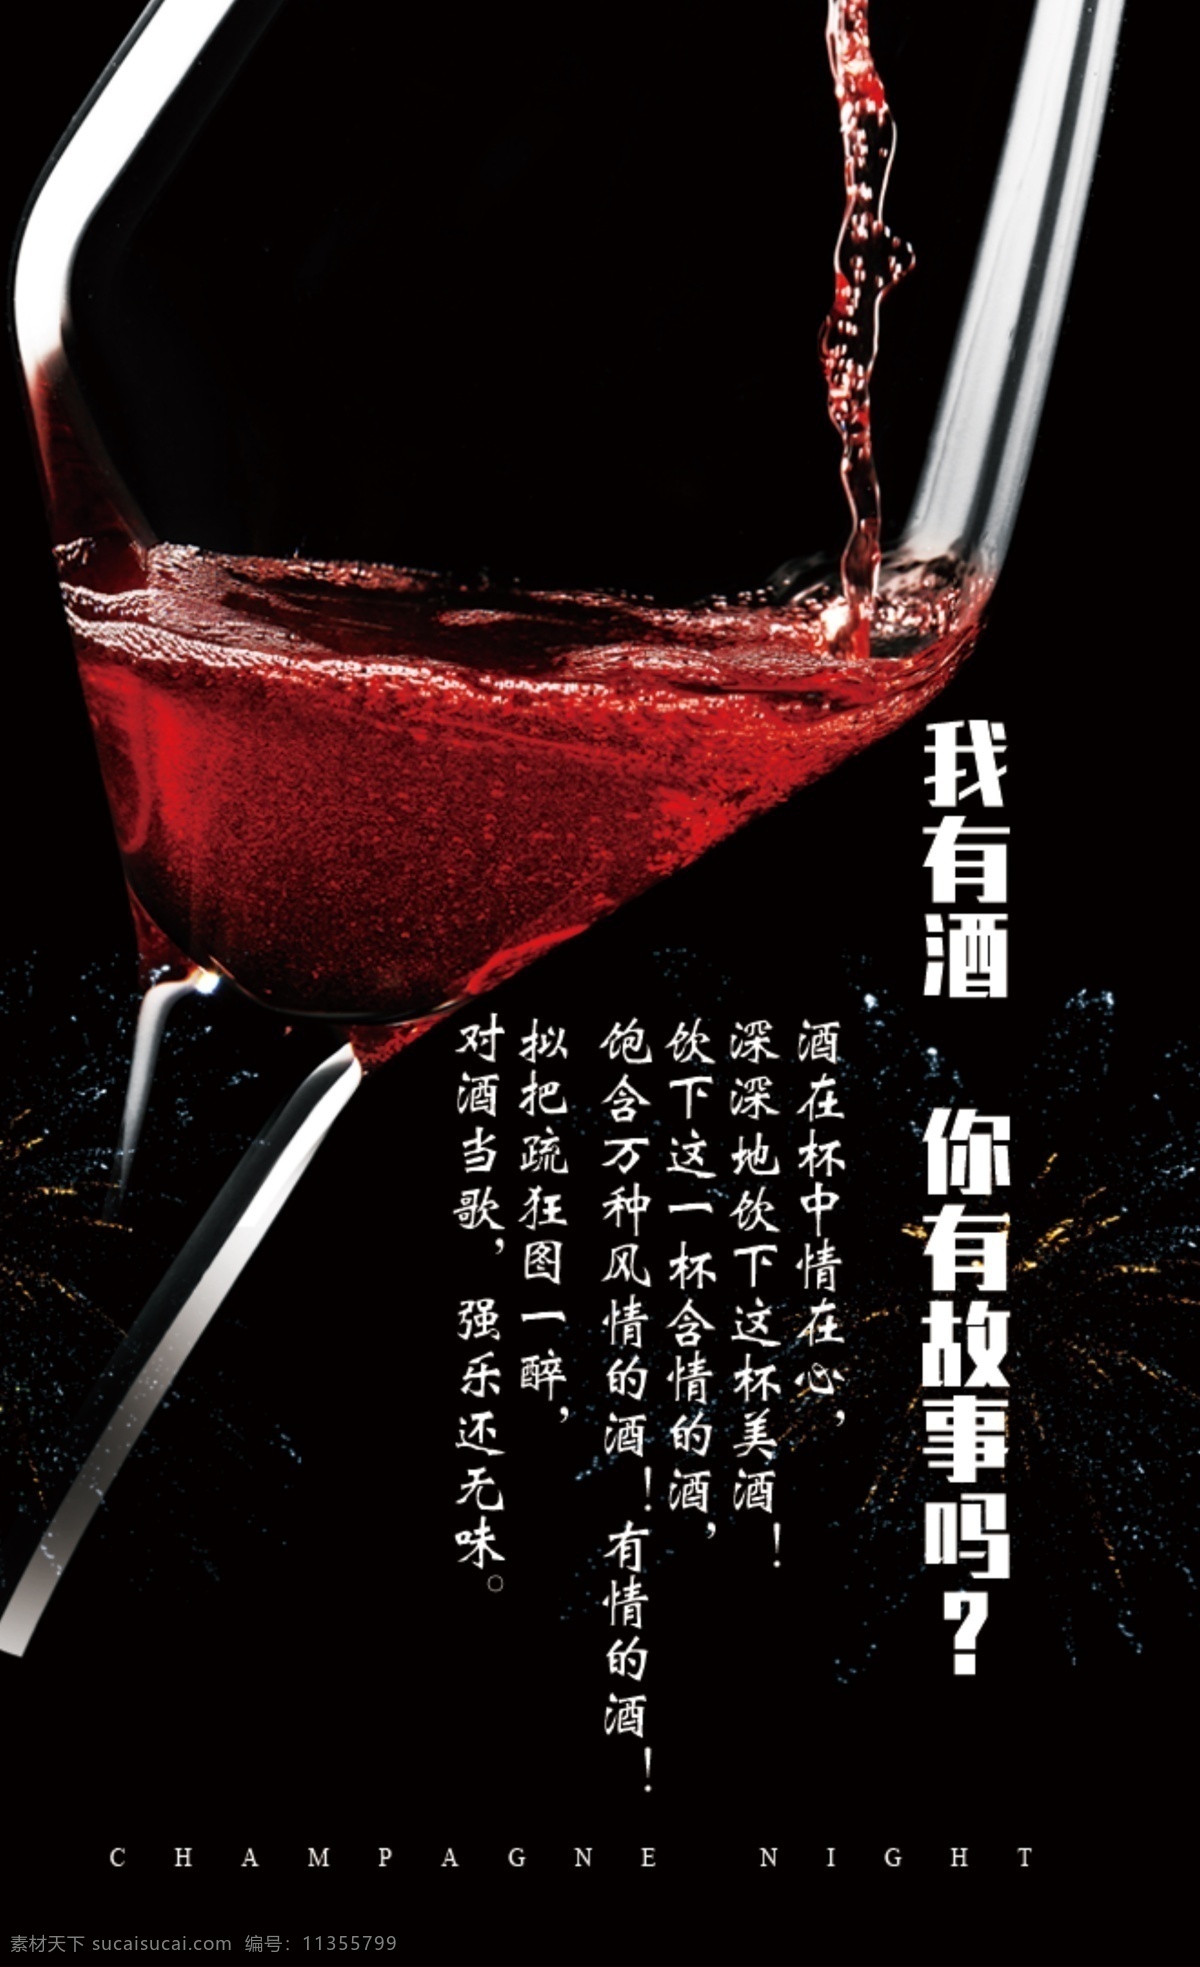 酒和故事 酒 情感 故事 黑色 红色 文化艺术 节日庆祝